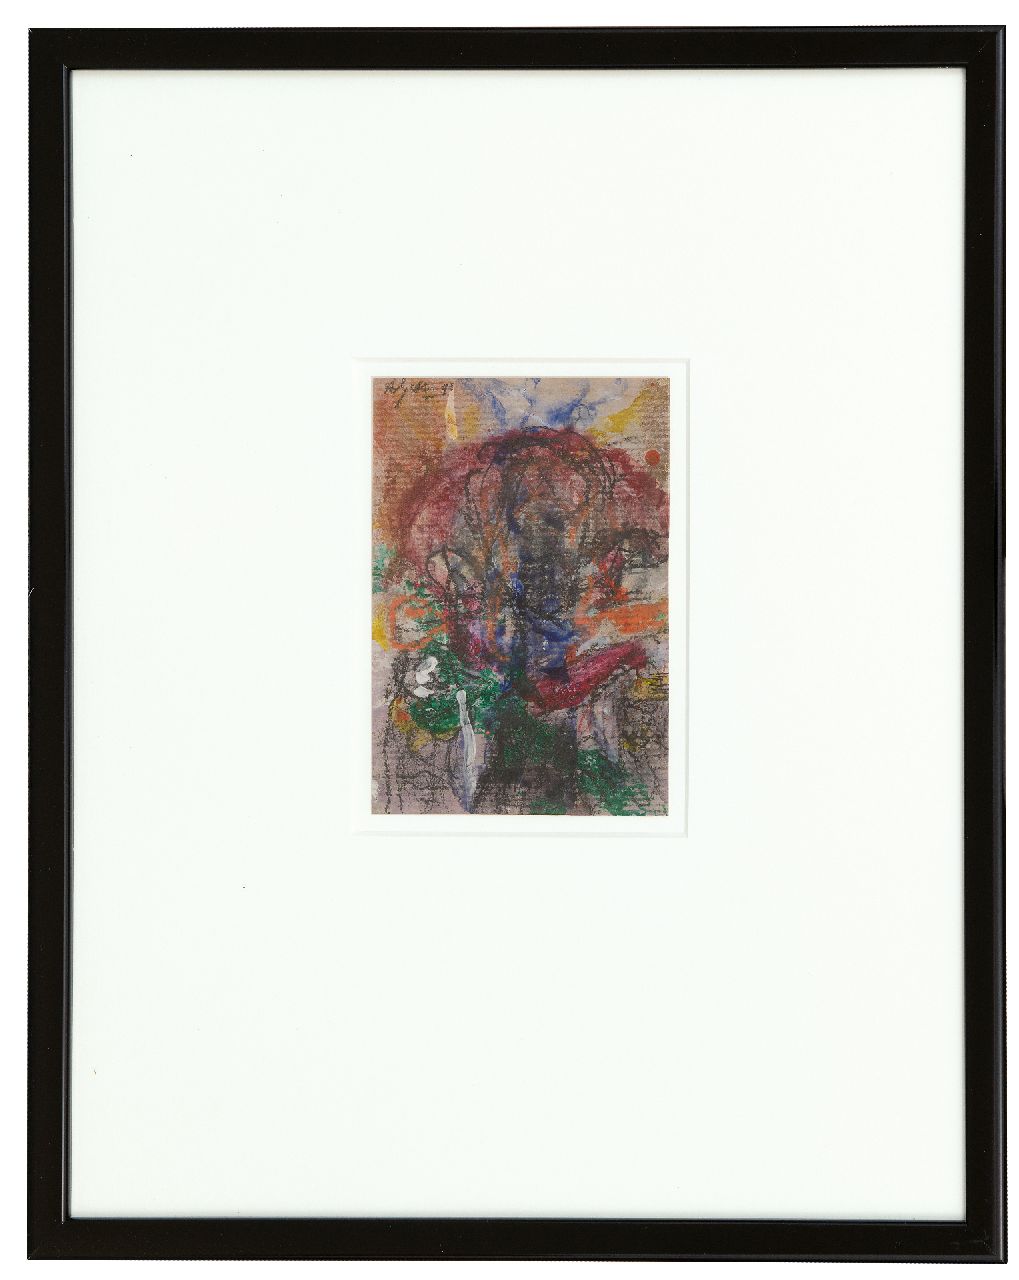 Snijders A.C.  | Adrianus Cornelis 'Ad' Snijders | Aquarellen en tekeningen te koop aangeboden | Zonder titel, gemengde techniek op papier 14,7 x 10,2 cm, gesigneerd linksboven en gedateerd '90